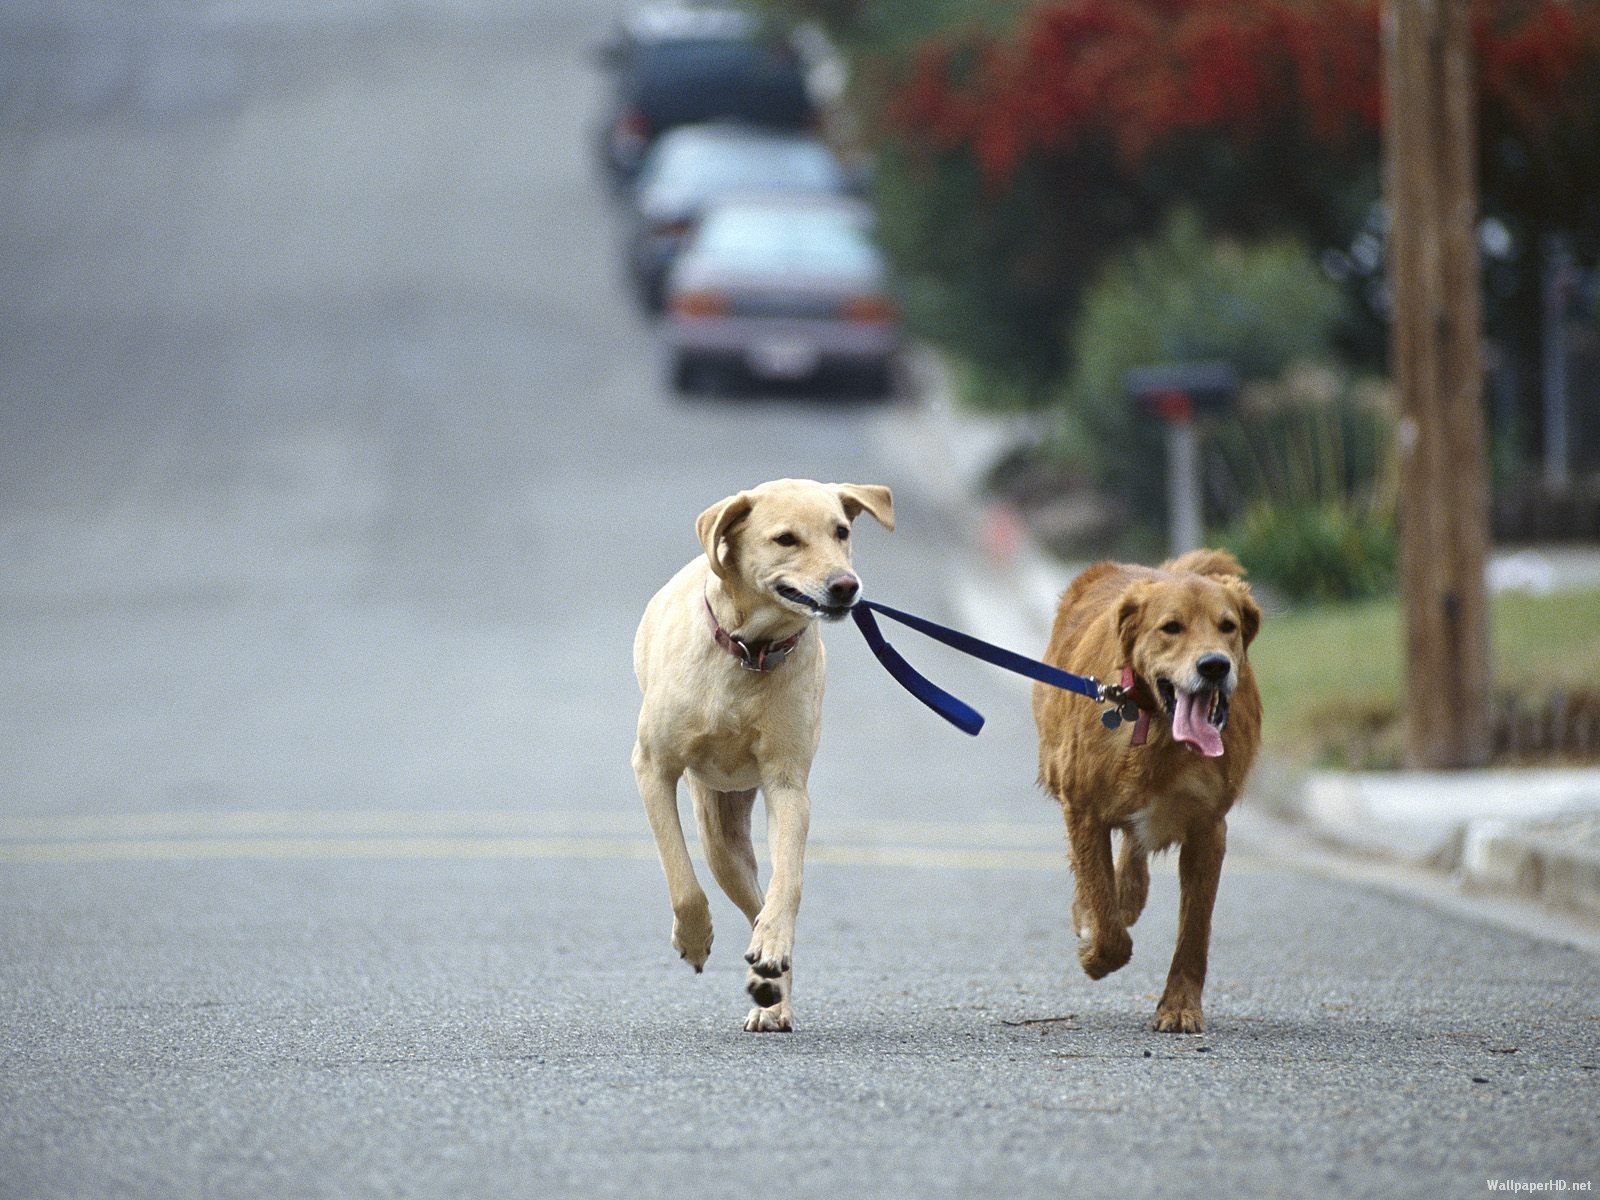 Correr con perros recomendaciones baltasar Nuozzi veterinario locos por correr 01